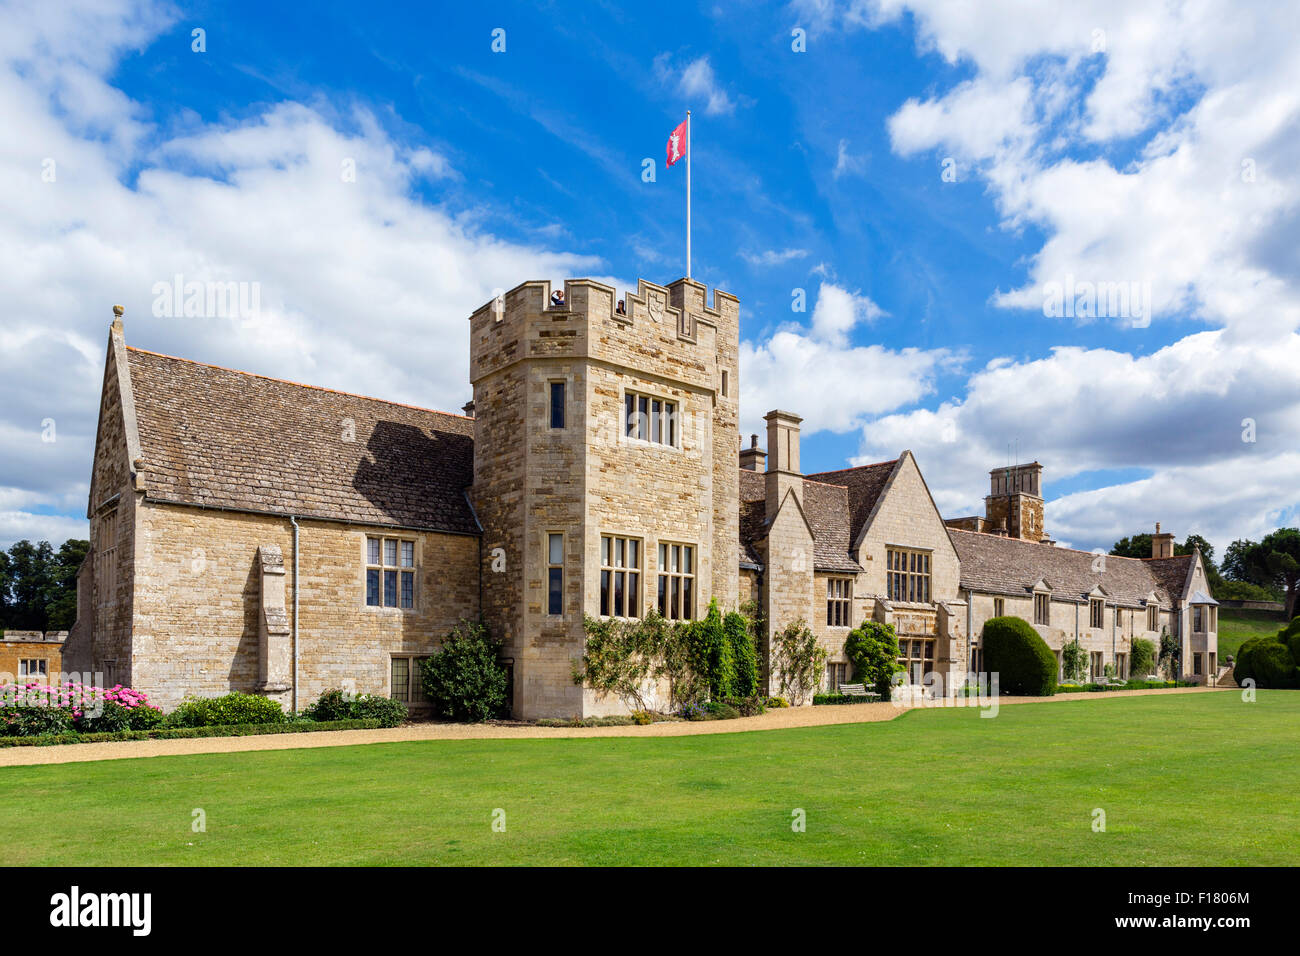 Le château de Rockingham, près de Corby, Northamptonshire, England, UK Banque D'Images